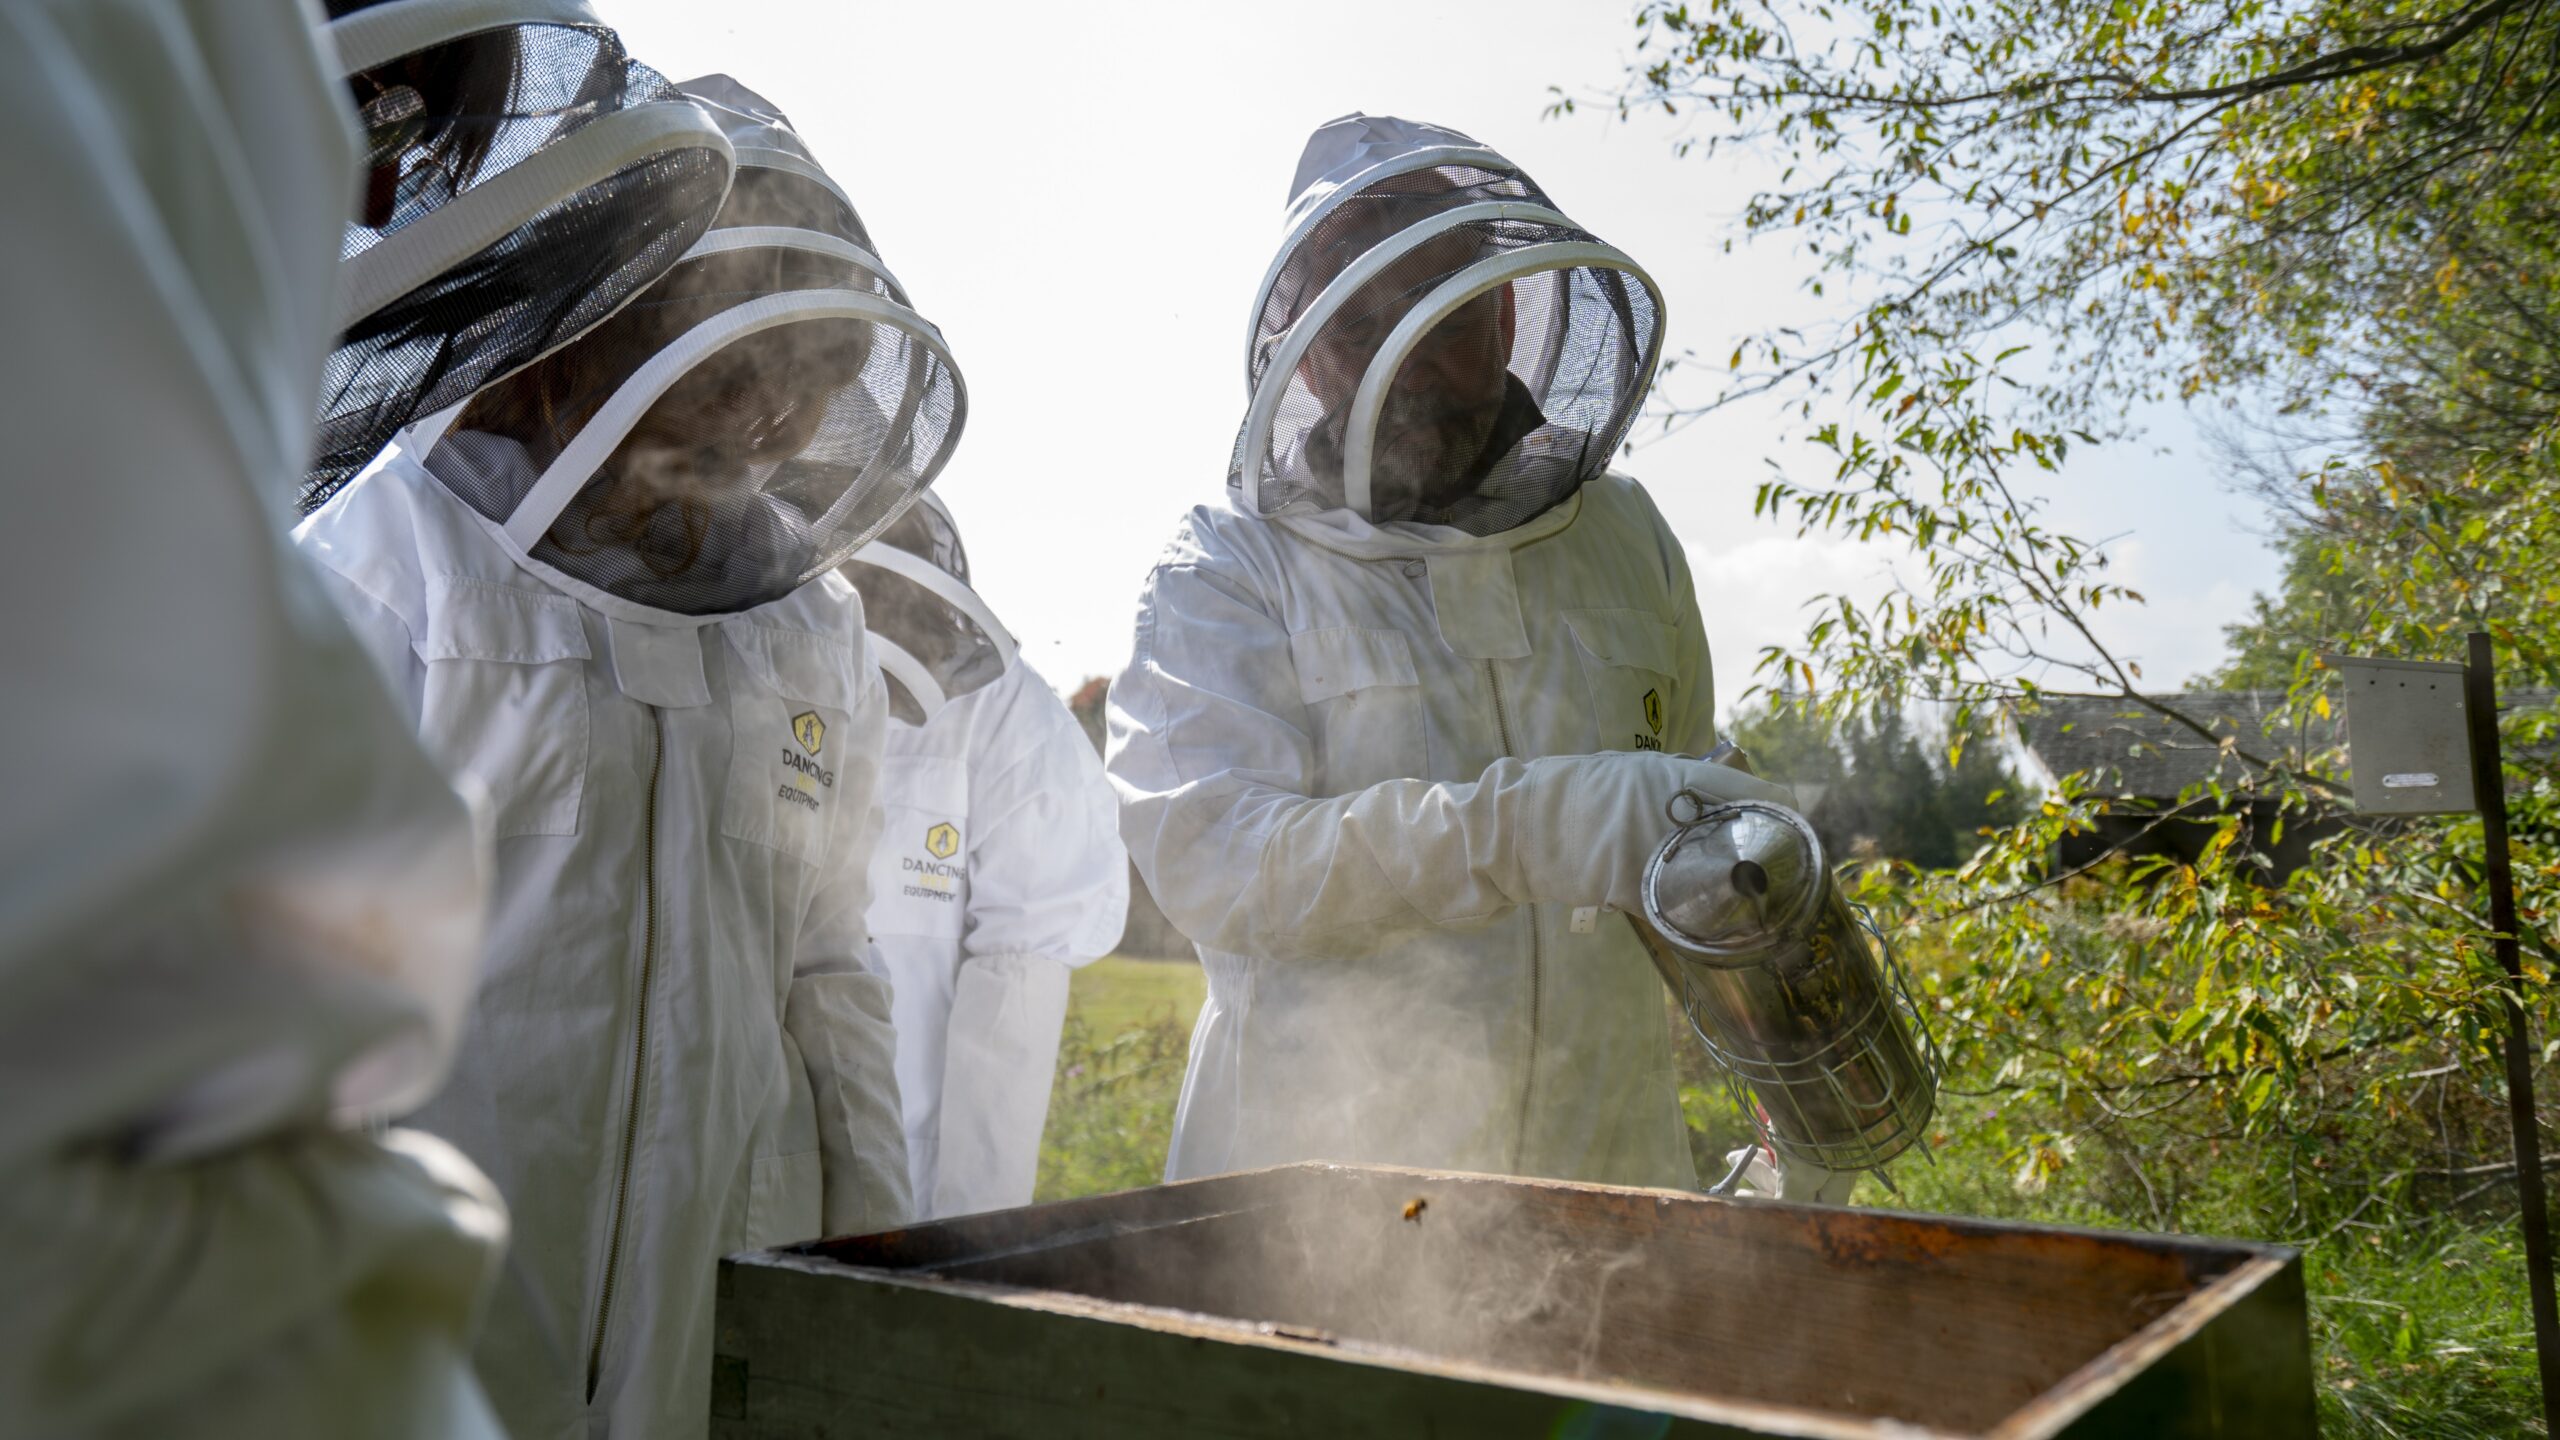 Honey Harvesting at the PRI campus